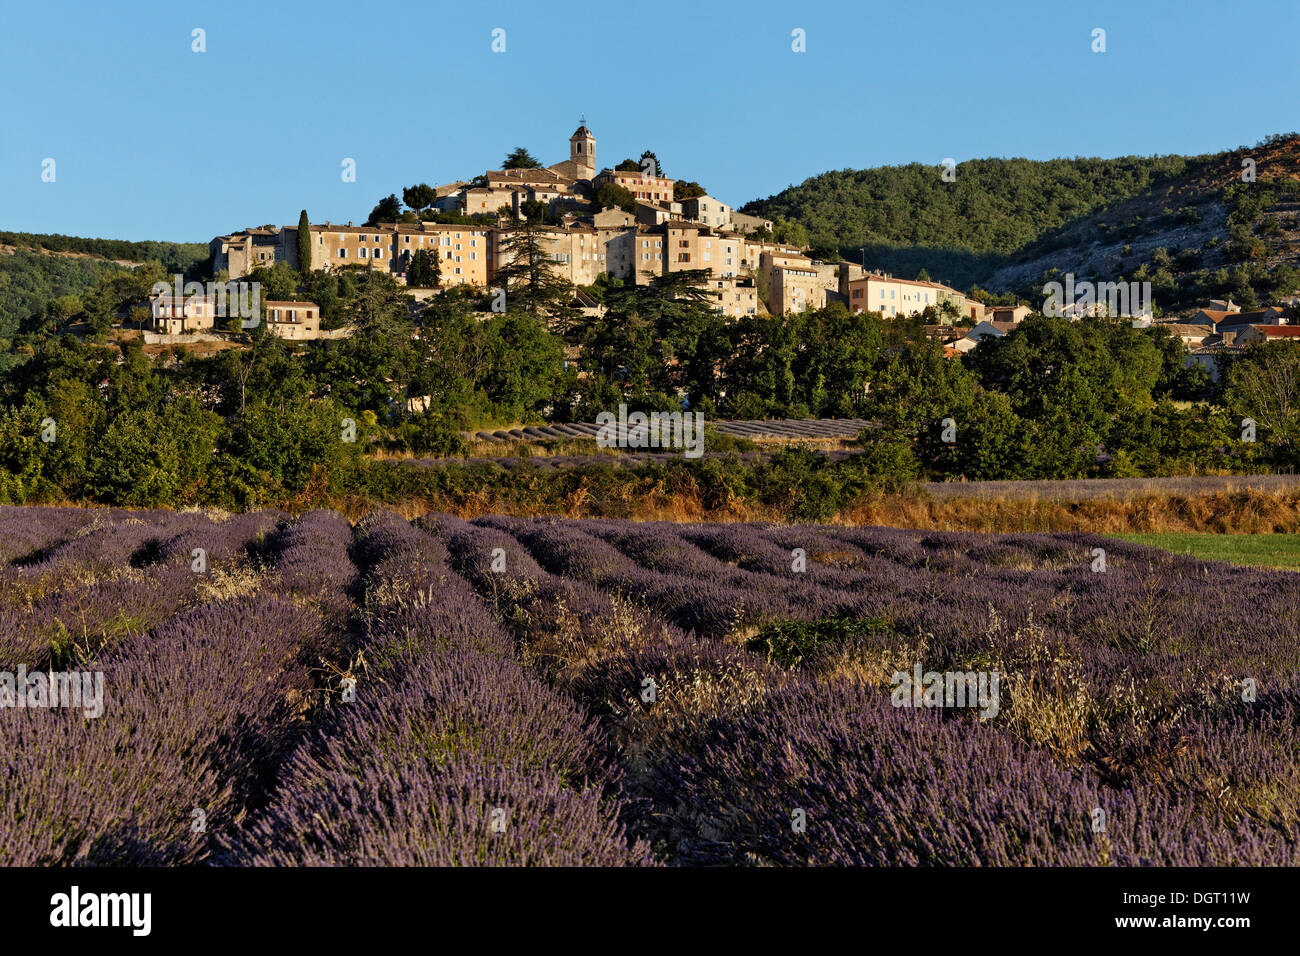 Mountain village of Banon with lavender fields, Forcalquier, Provence region, Département Alpes-de-Haute-Provence, France Stock Photo